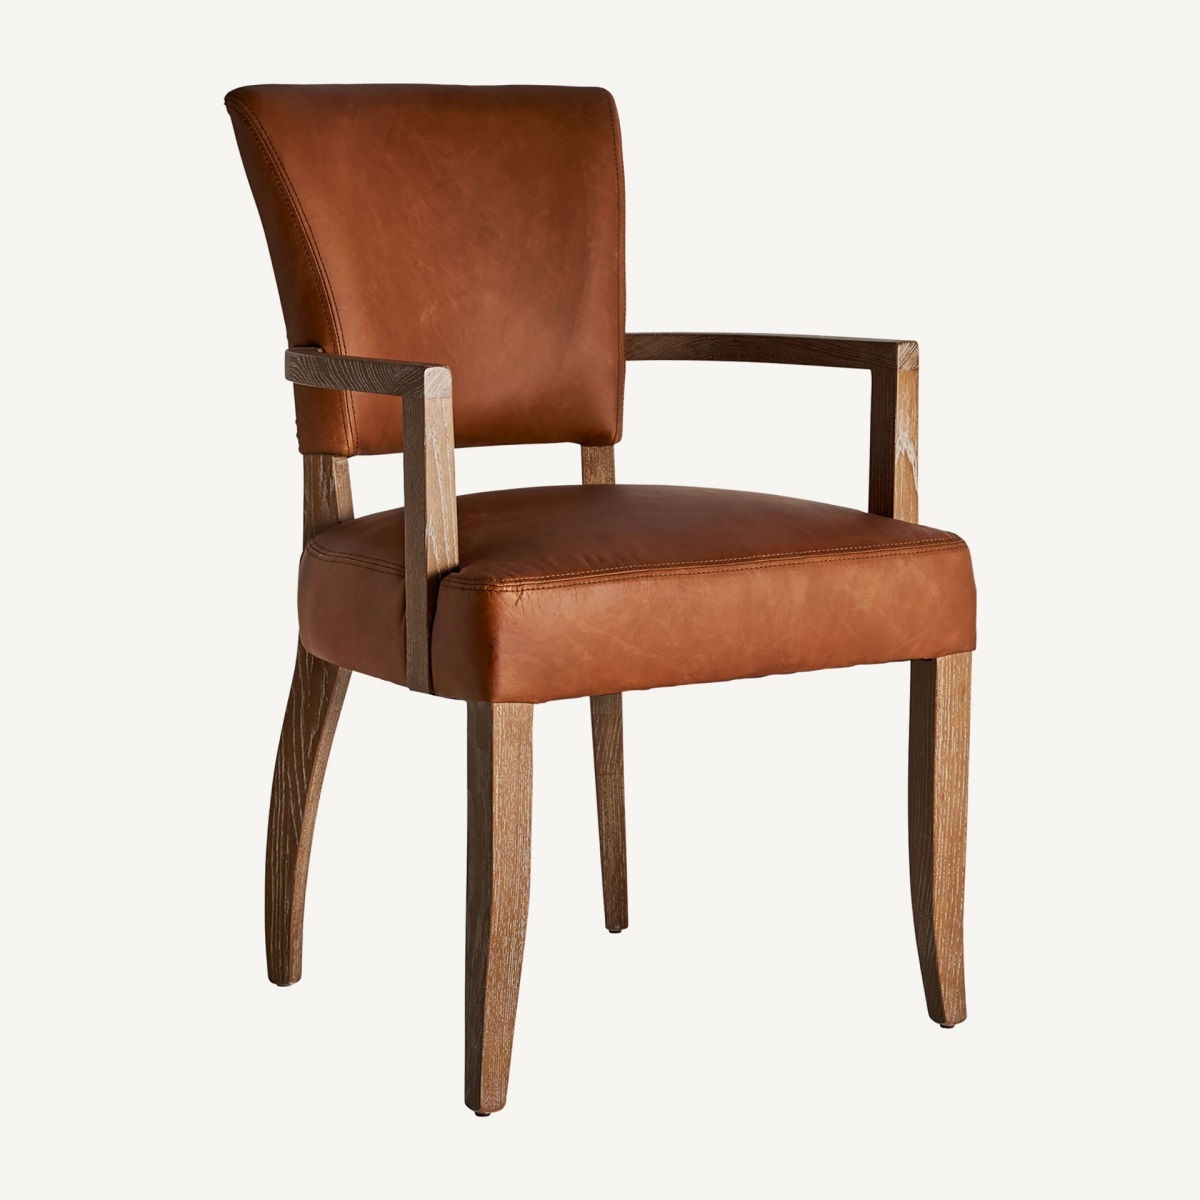 Estupenda silla de madera con reposabrazos y acolchada 56 x 98 x 48